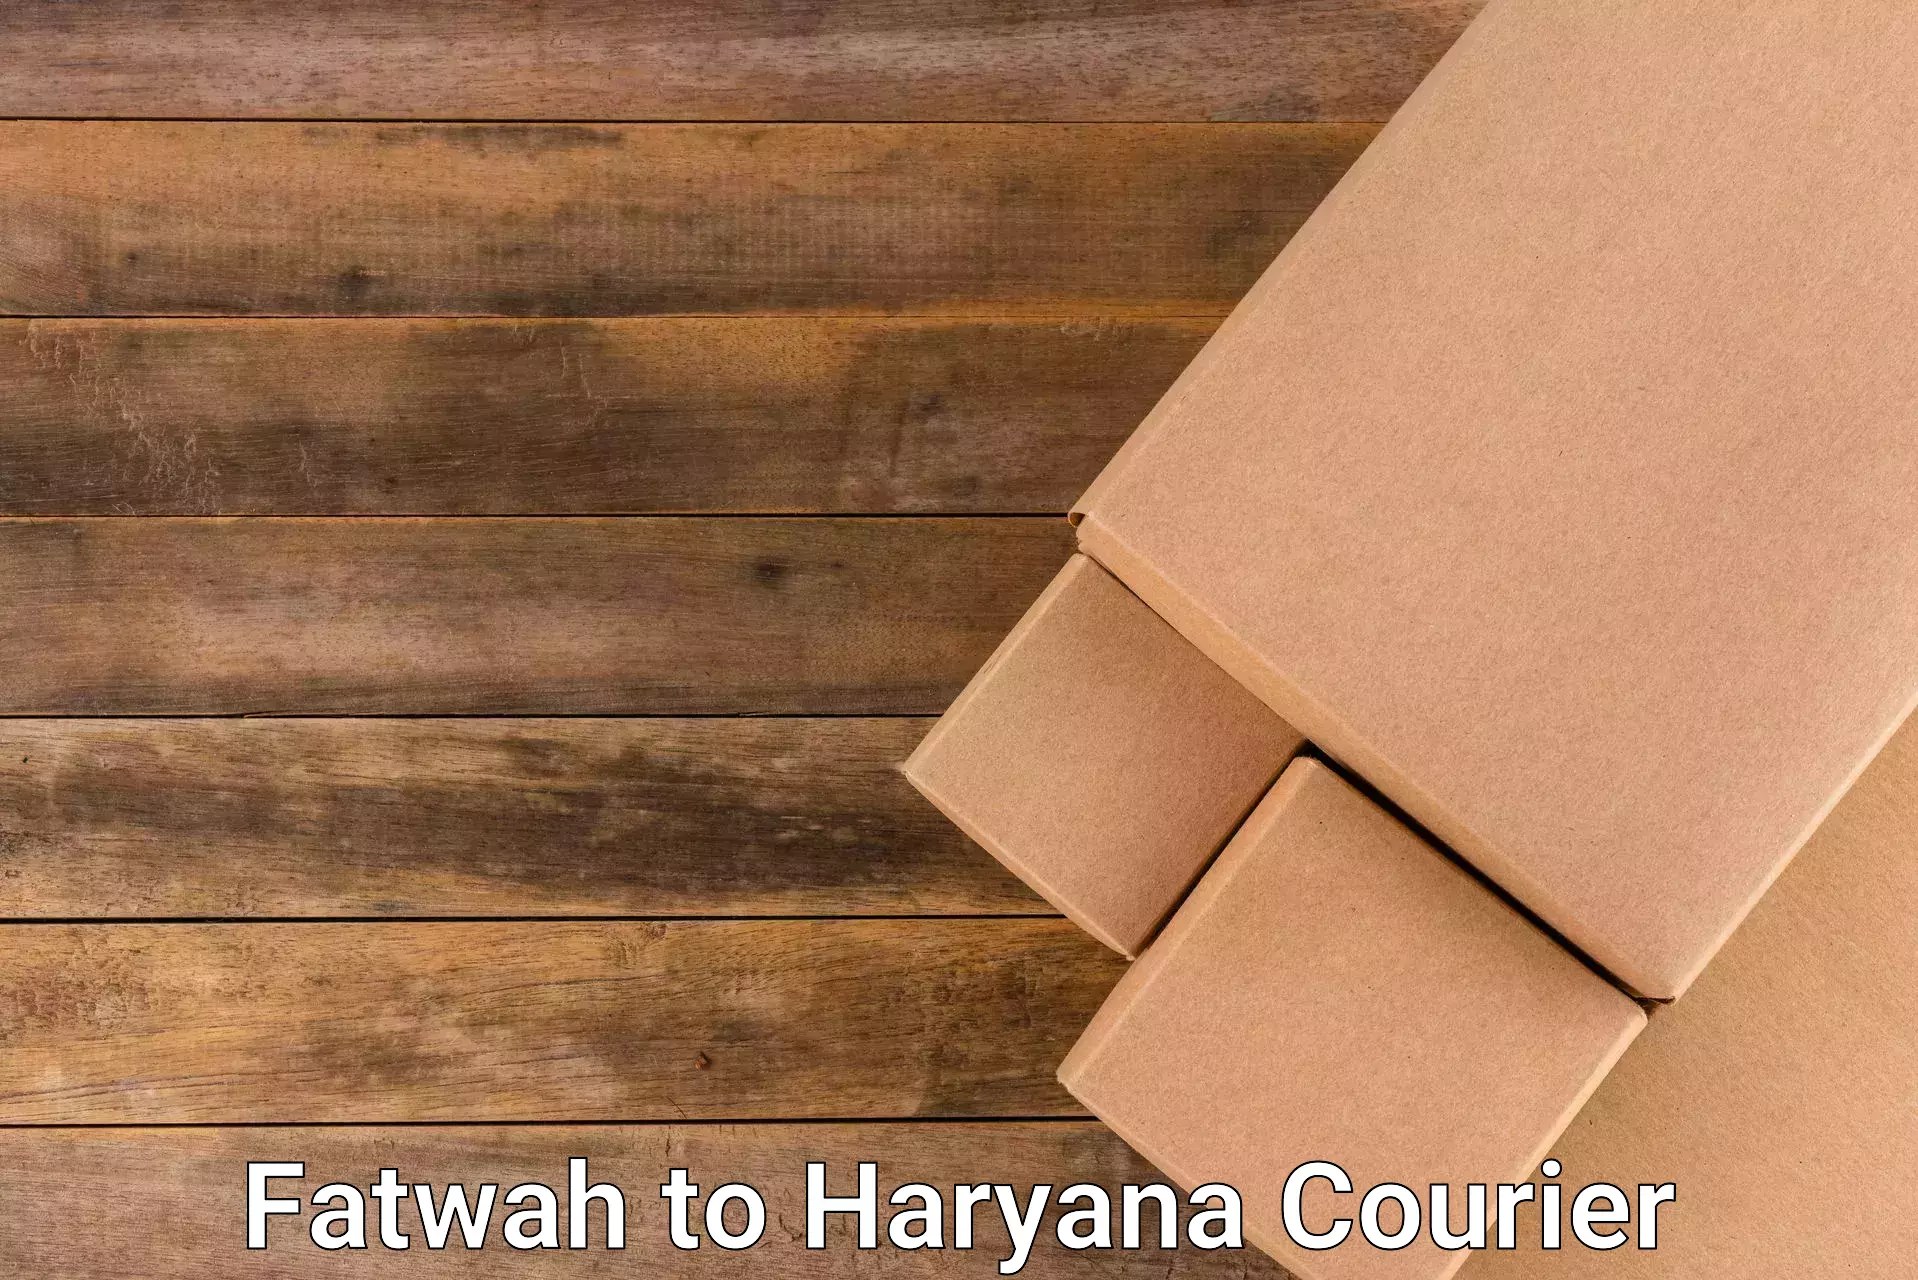 24/7 courier service Fatwah to Gohana